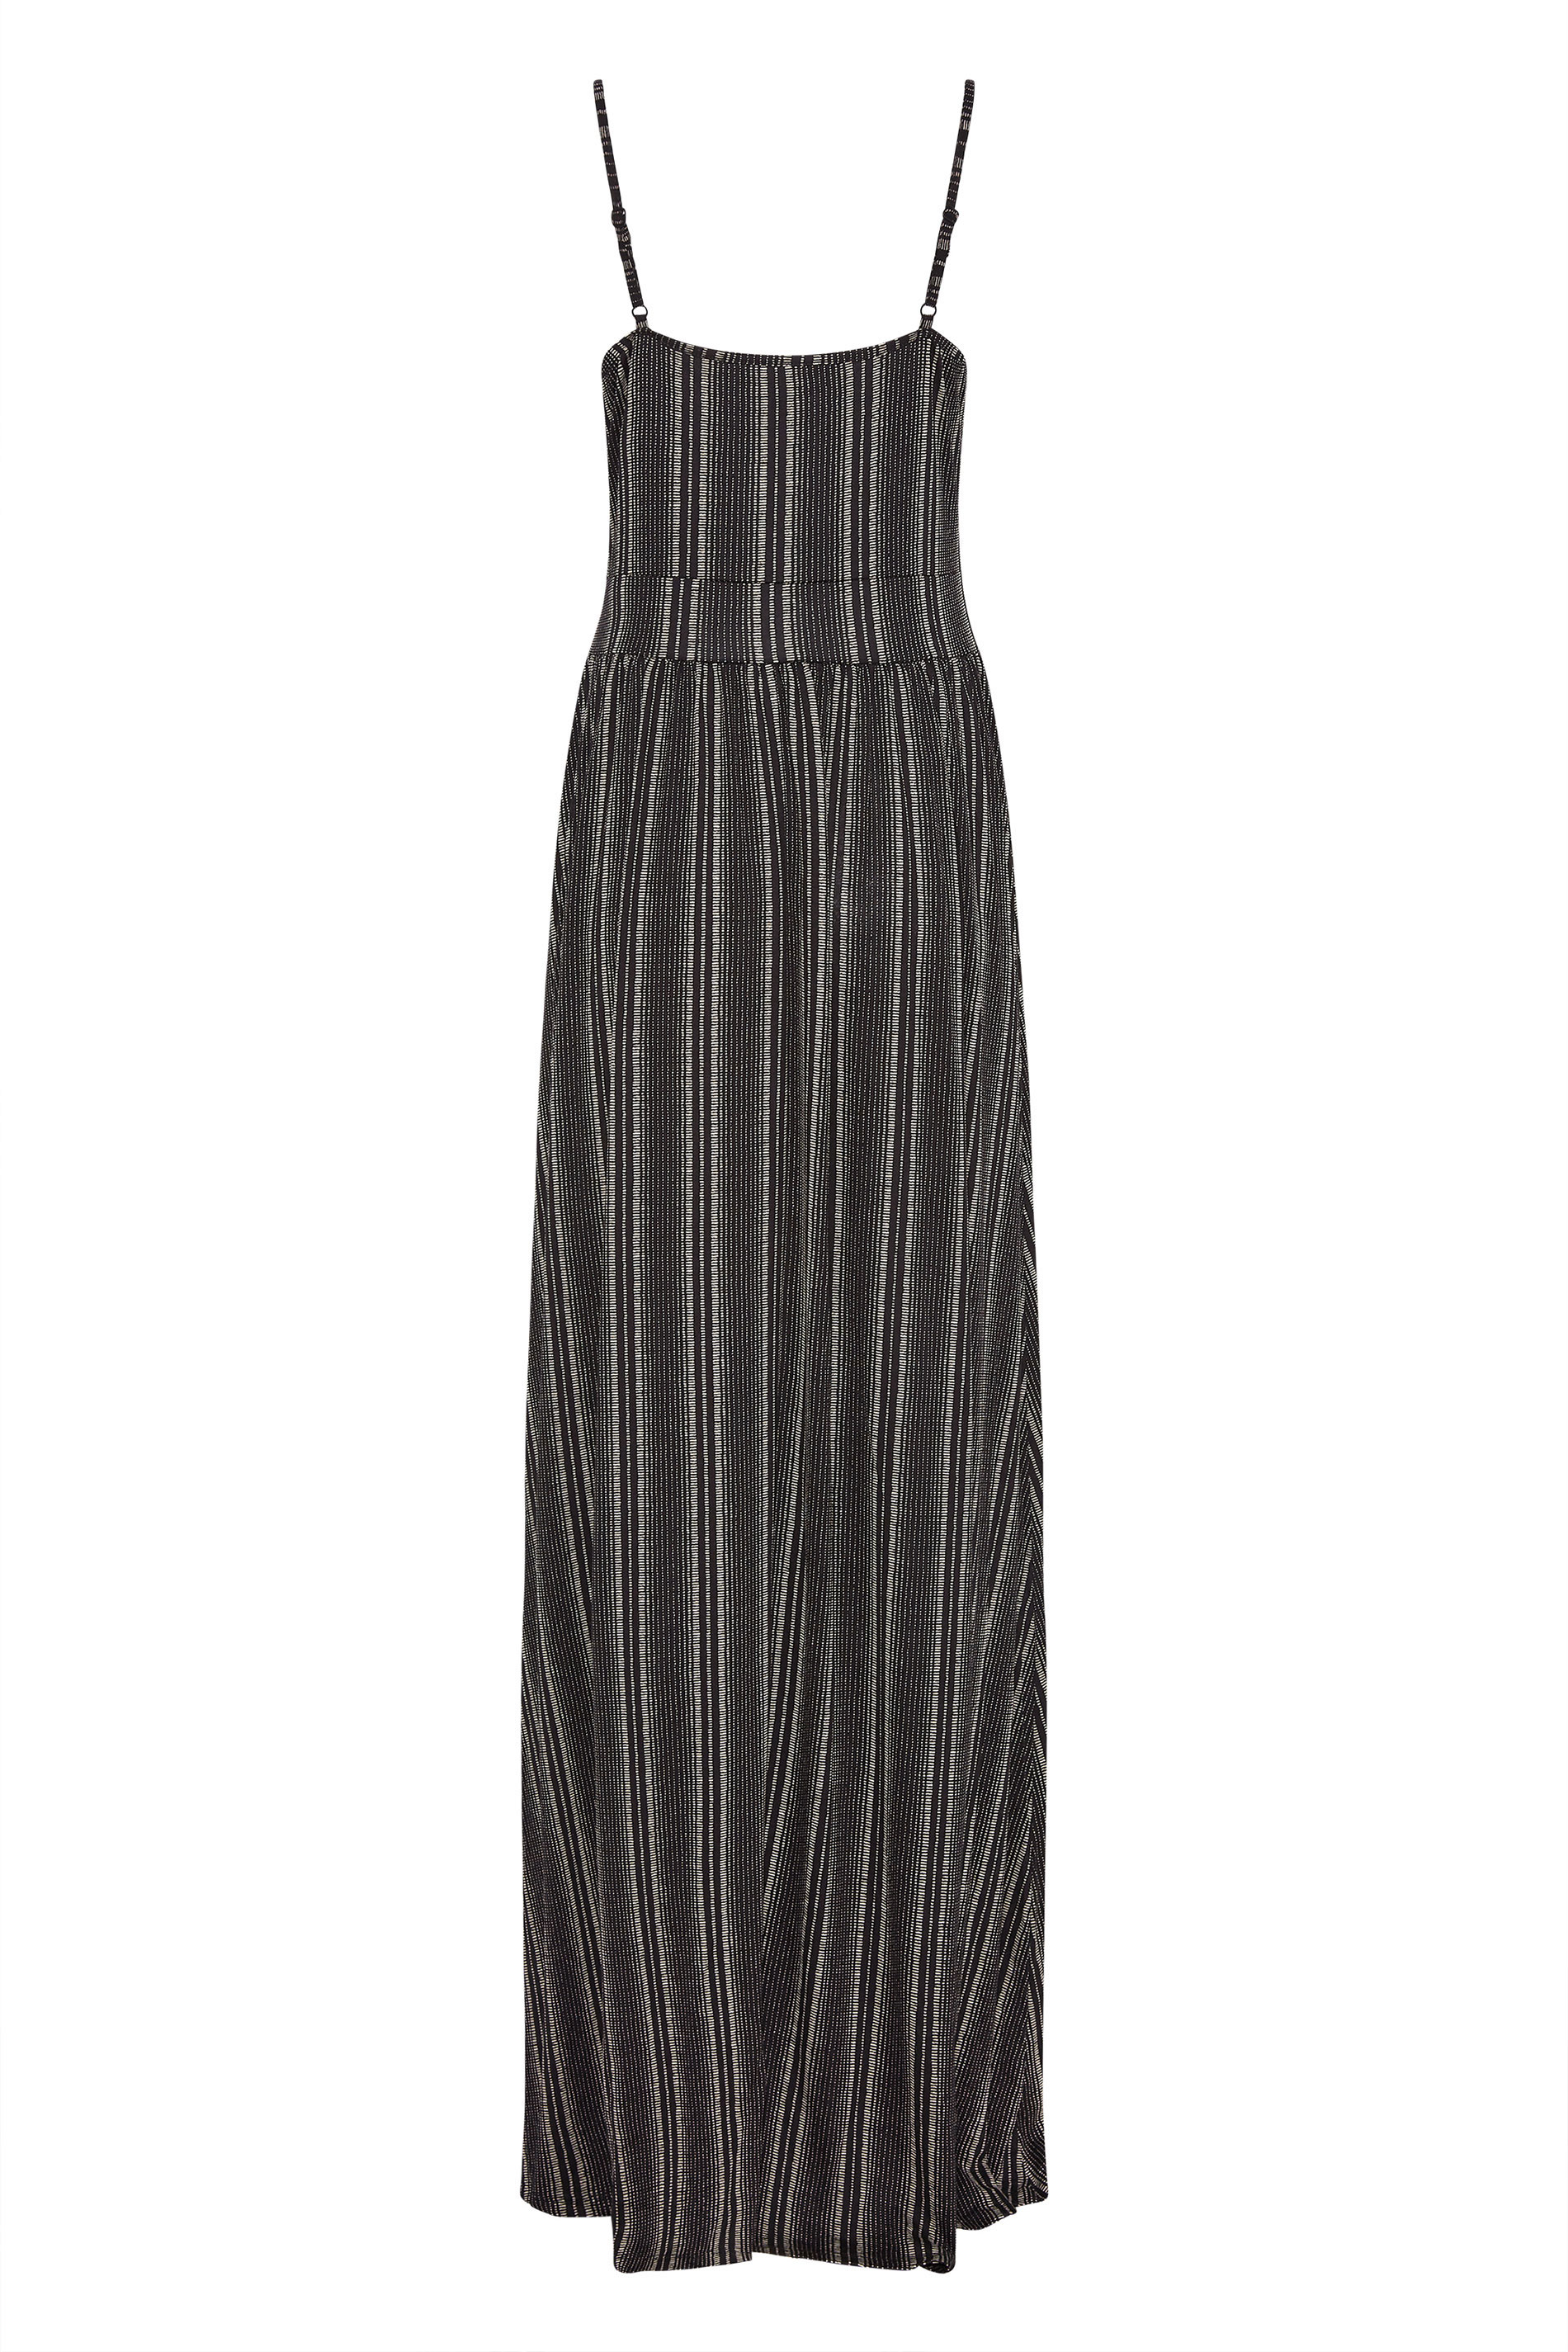 LTS Tall Black Striped Maxi Dress | Long Tall Sally